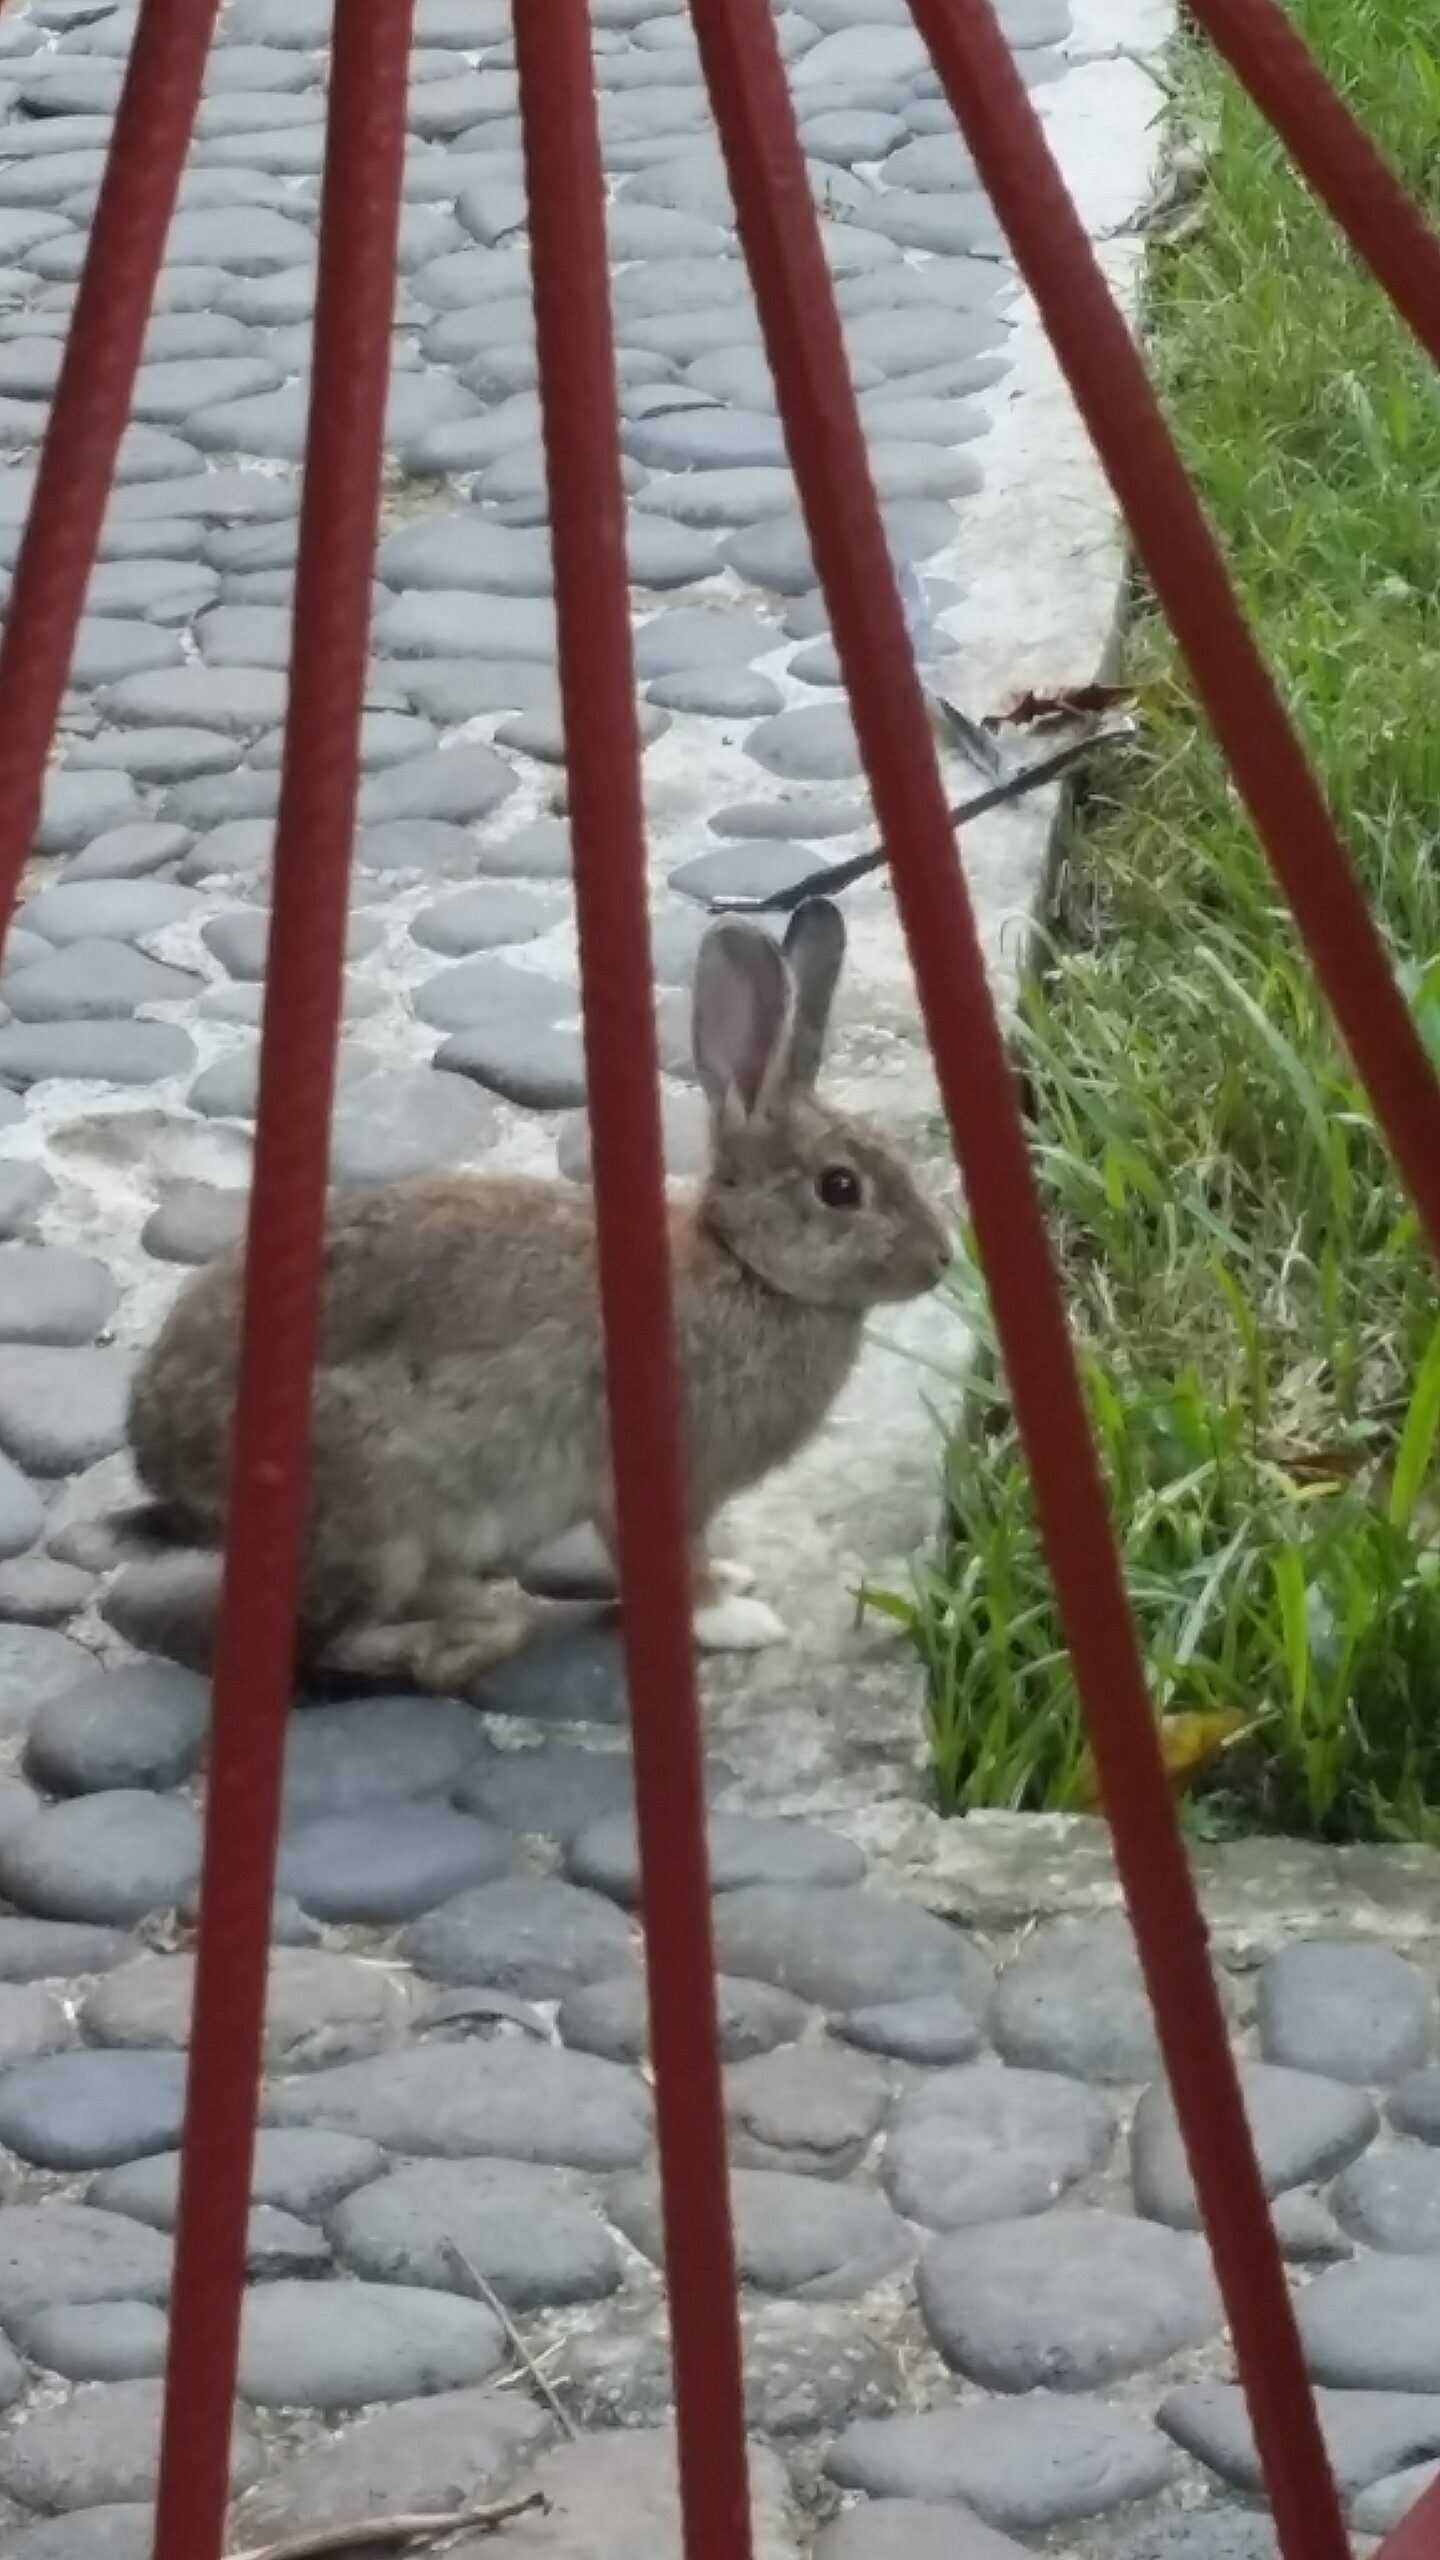 A bunny to keep me company